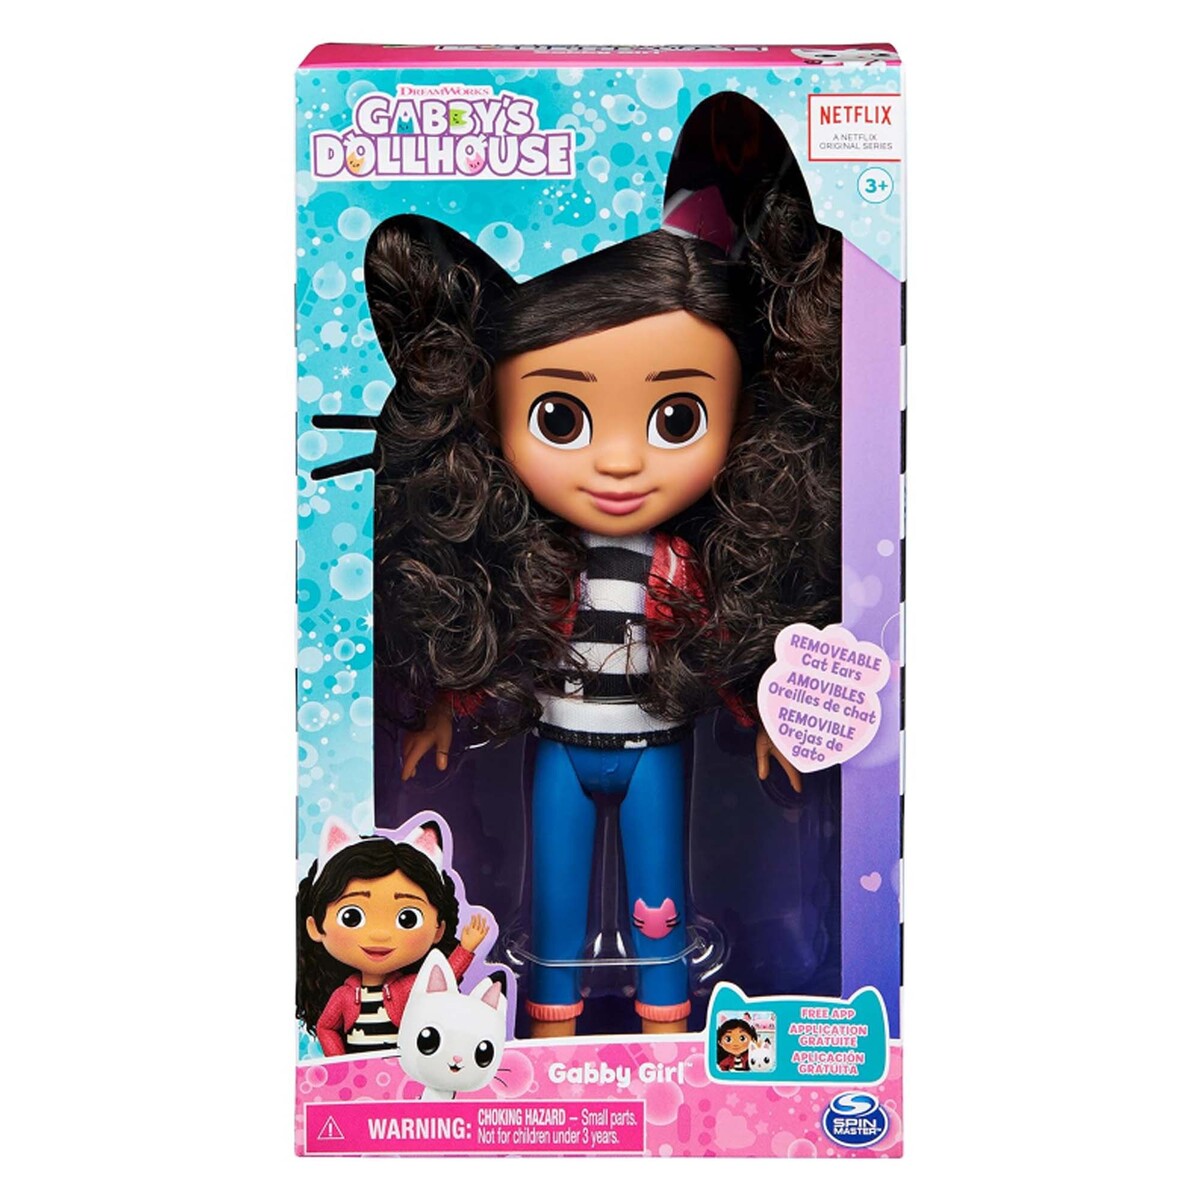 Gabby's Dollhouse Basic Gabby Girl Doll, 6060430